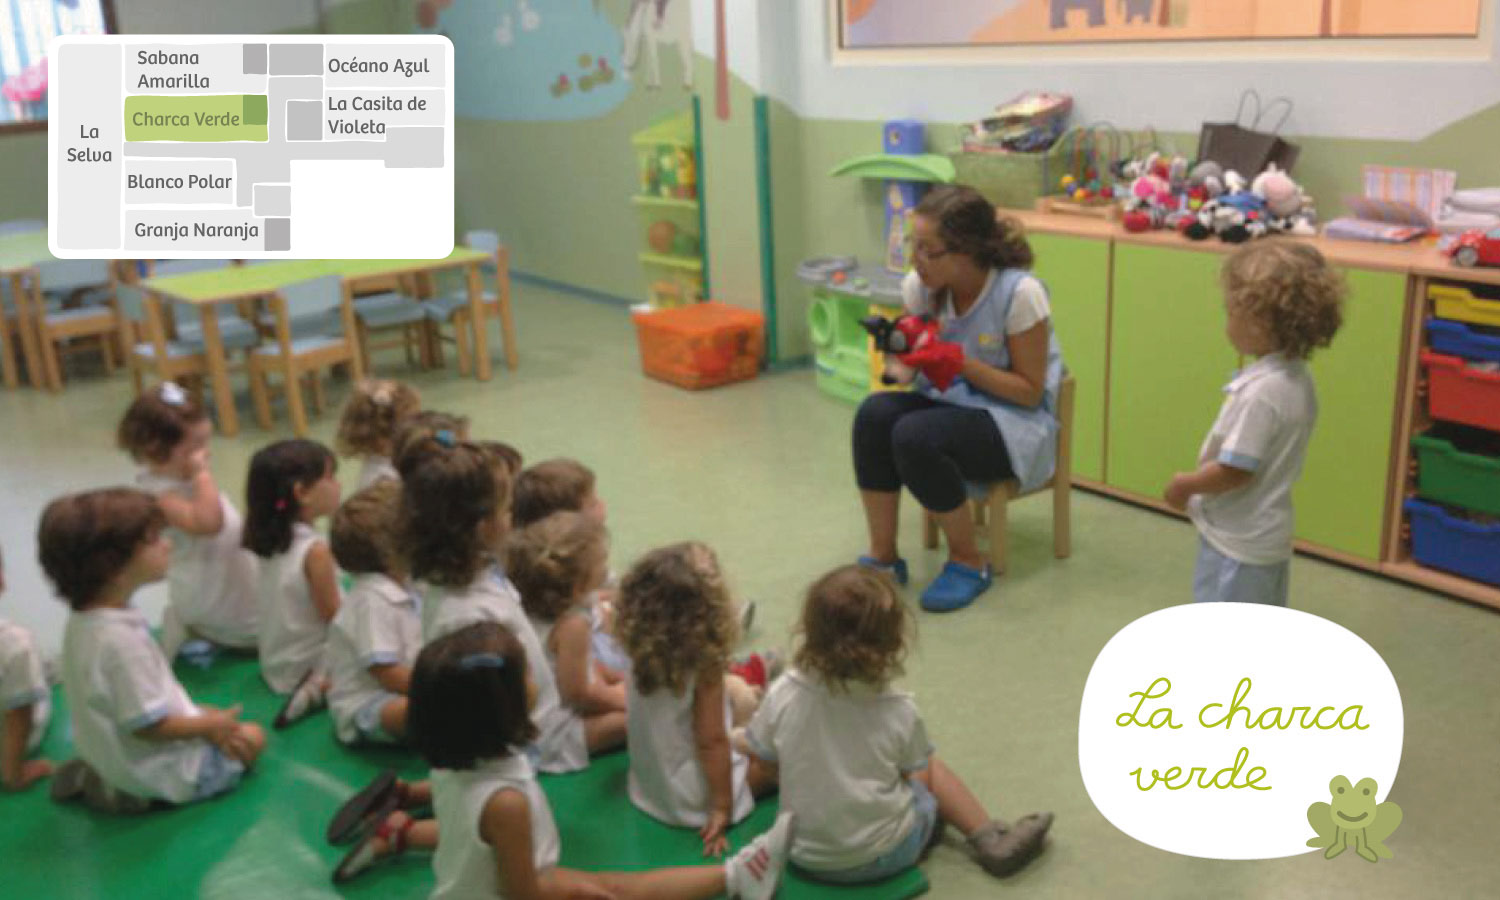 Charca verde Xicotets escuela infantil